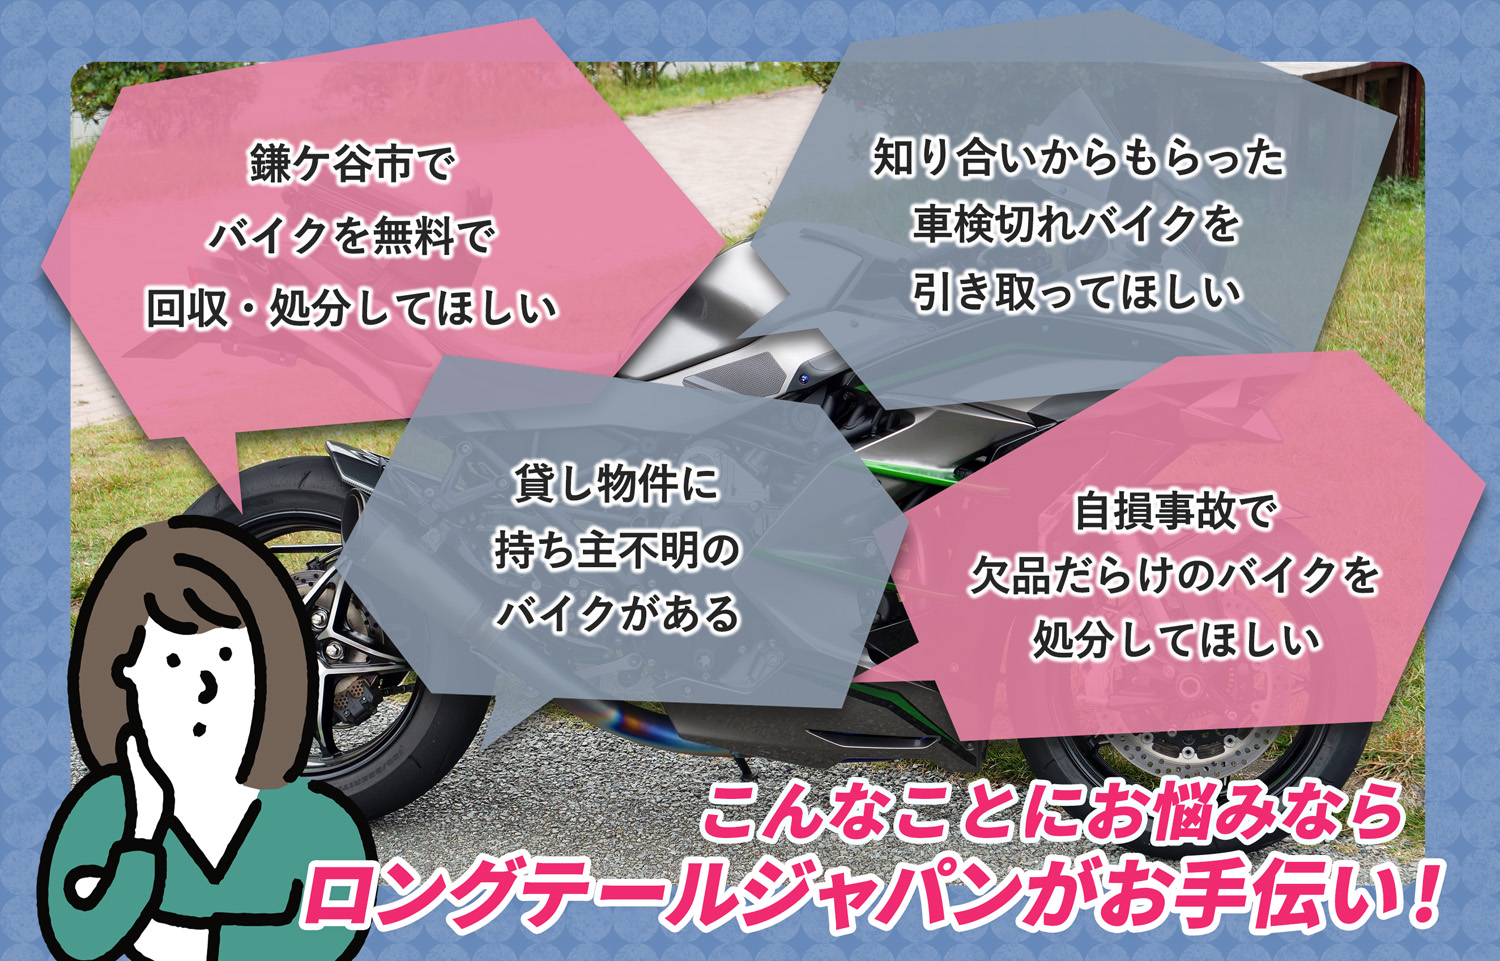 鎌ケ谷市でこんなバイクの処分にお困りでしたらバイク無料回収処分隊がお手伝いいたします。